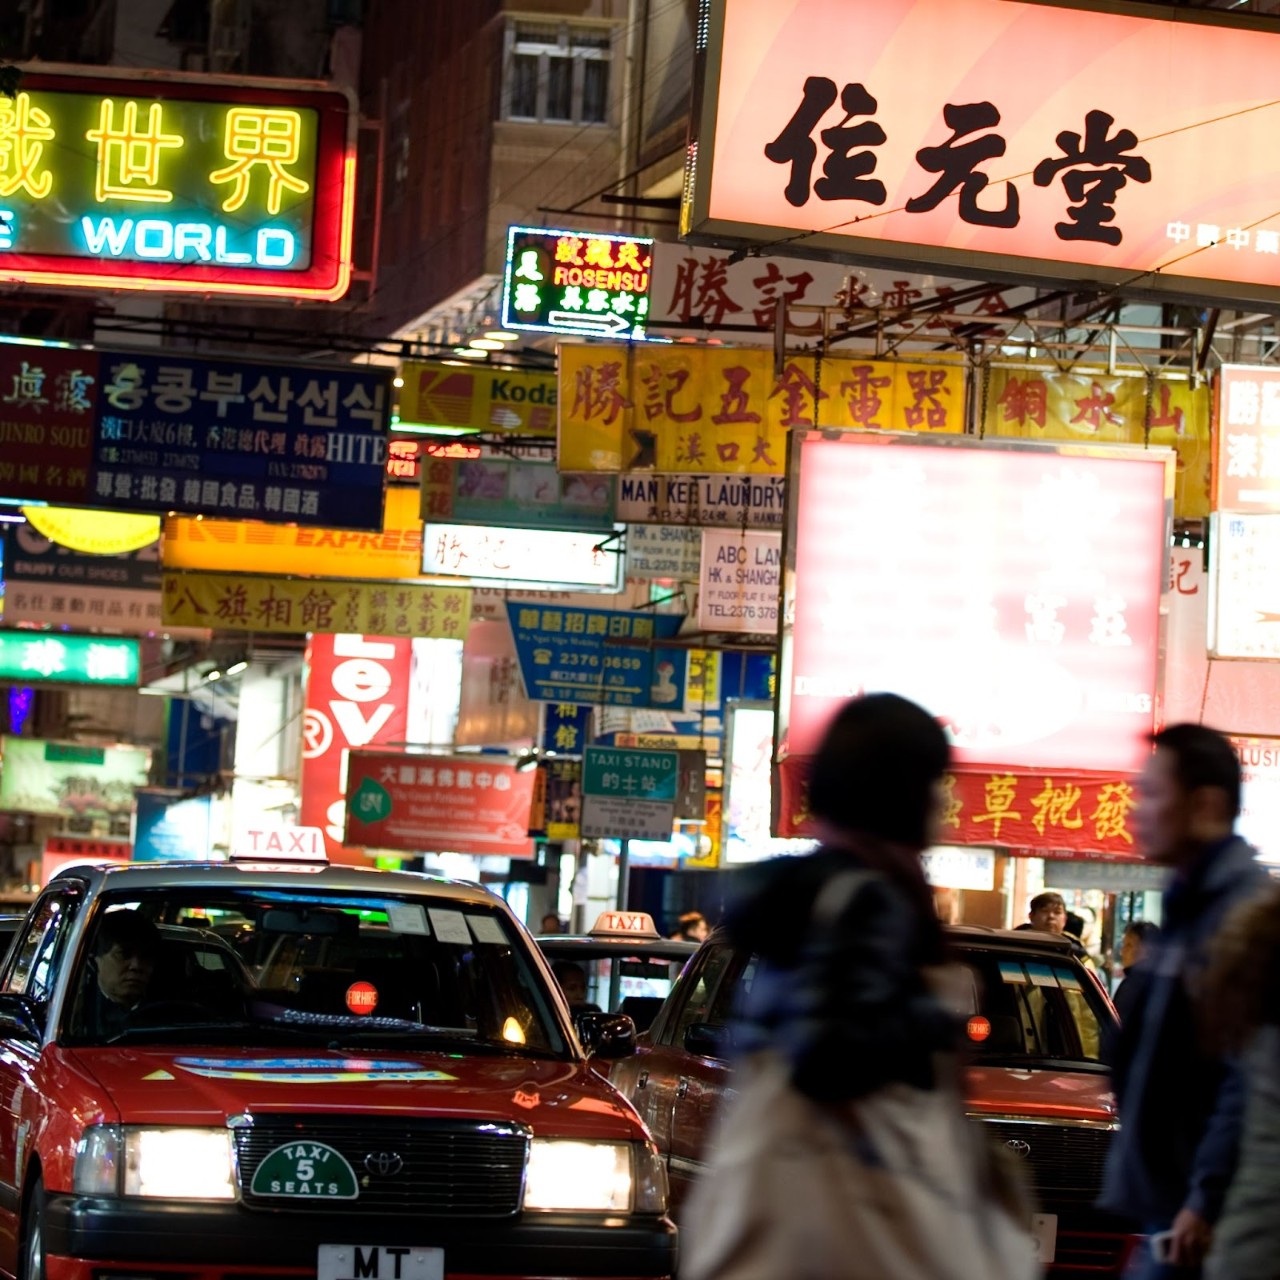 Image of people crossing the street in Hong Kong.